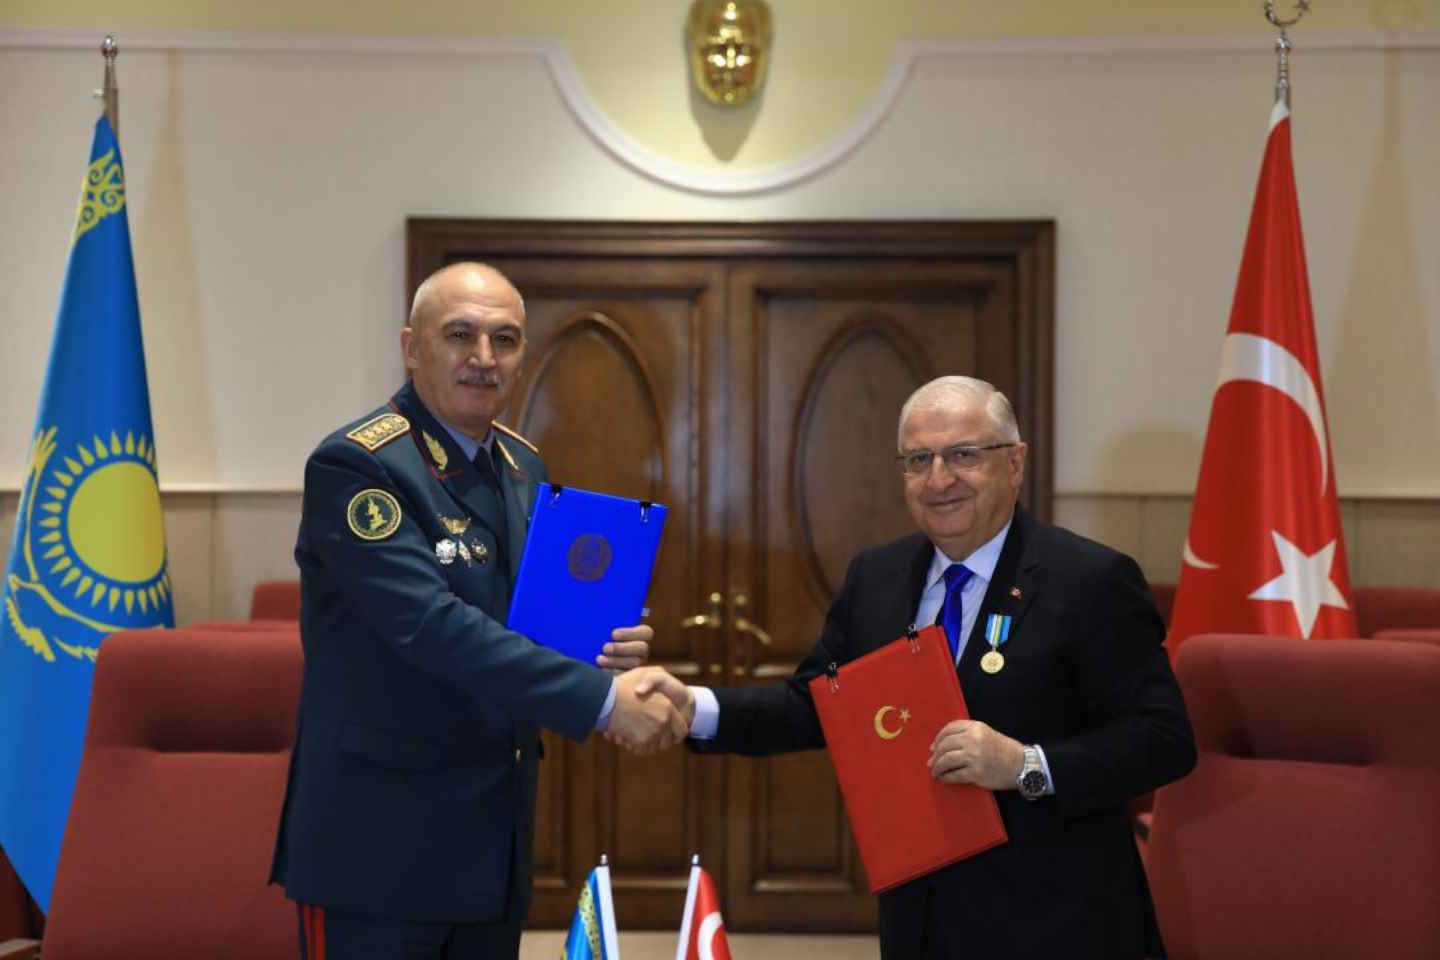 Новости Казахстана / Политика в Казахстане / Министр обороны Казахстана посетил Турцию